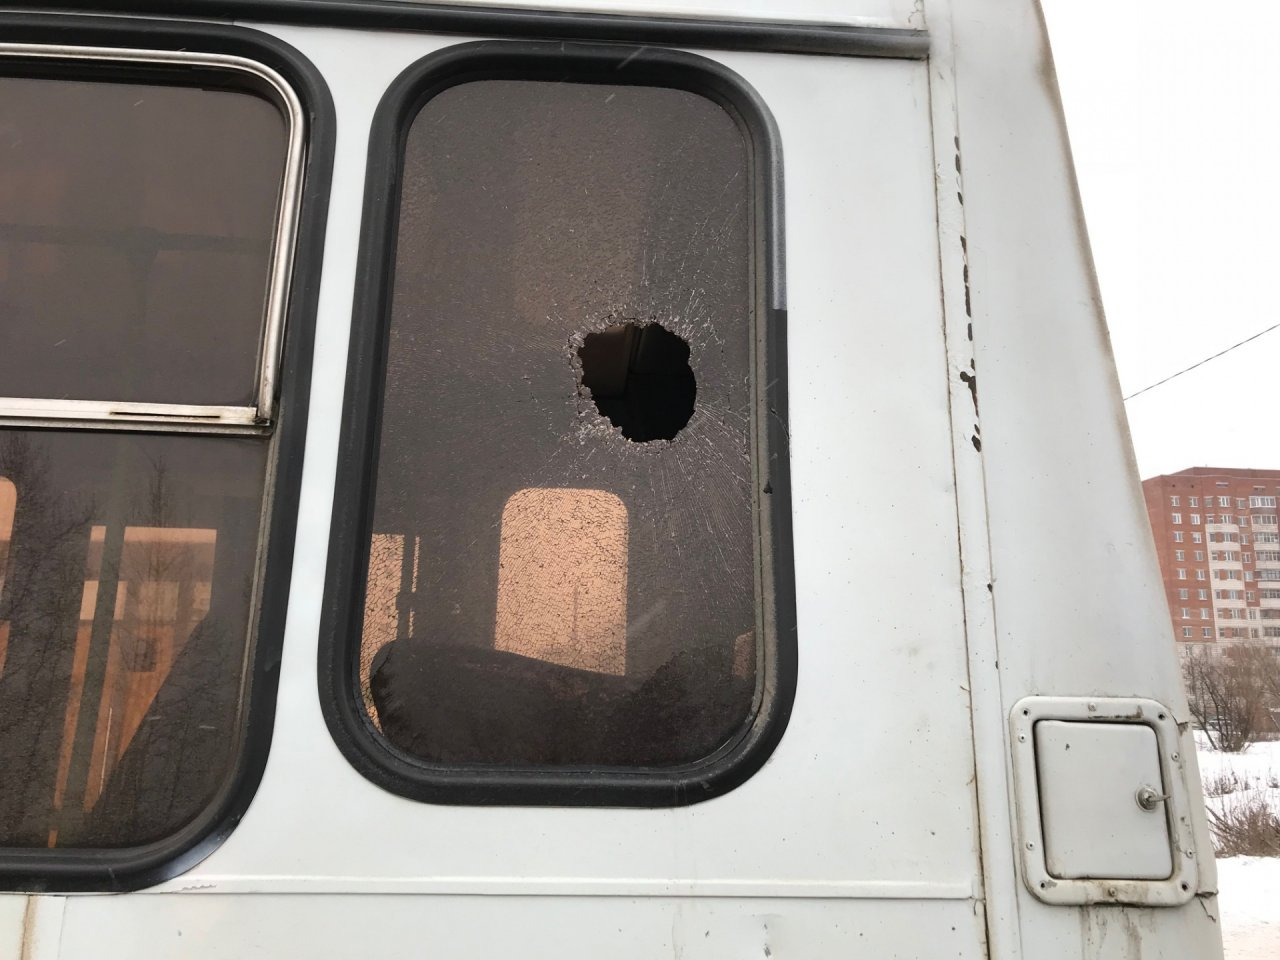 В Коми в окно автобуса влетел кусок металла: пострадал 4-летний ребенок